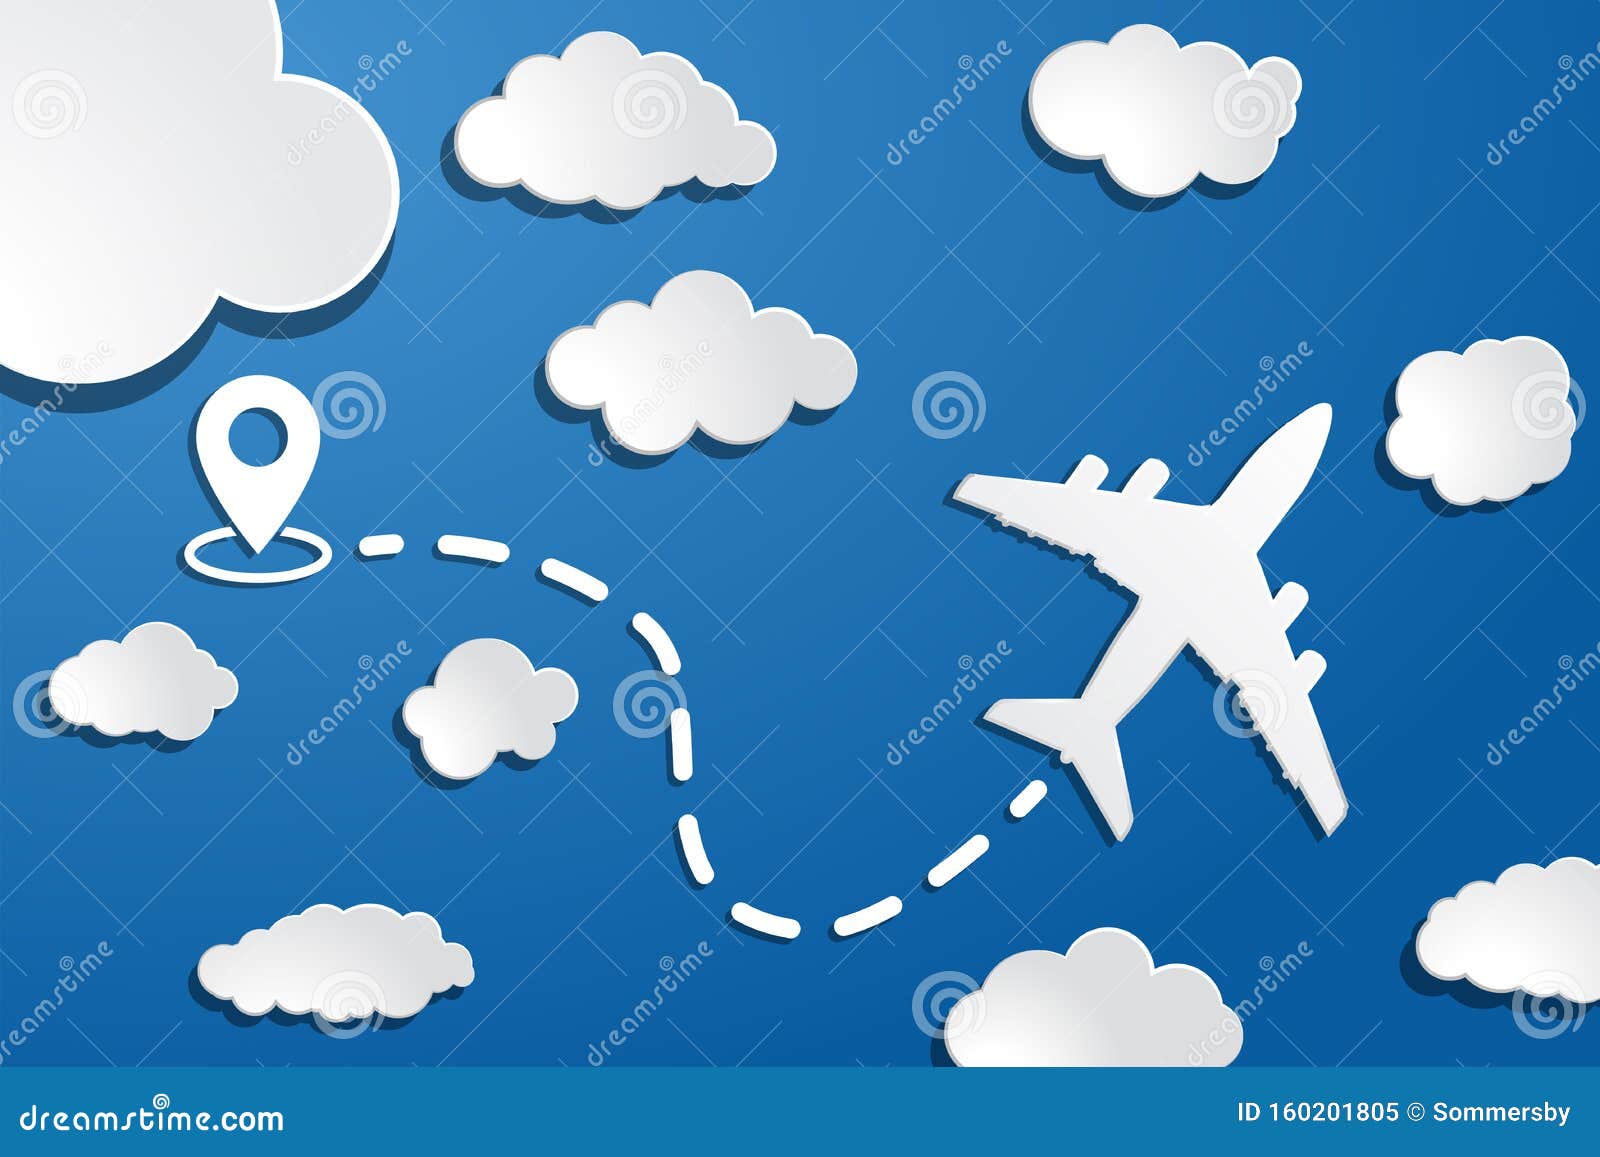 蓝空背景中起点 暗线迹和白云的纸飞机晴空旅行背景向量例证 插画包括有商业 飞行 概念 喷气式飞机